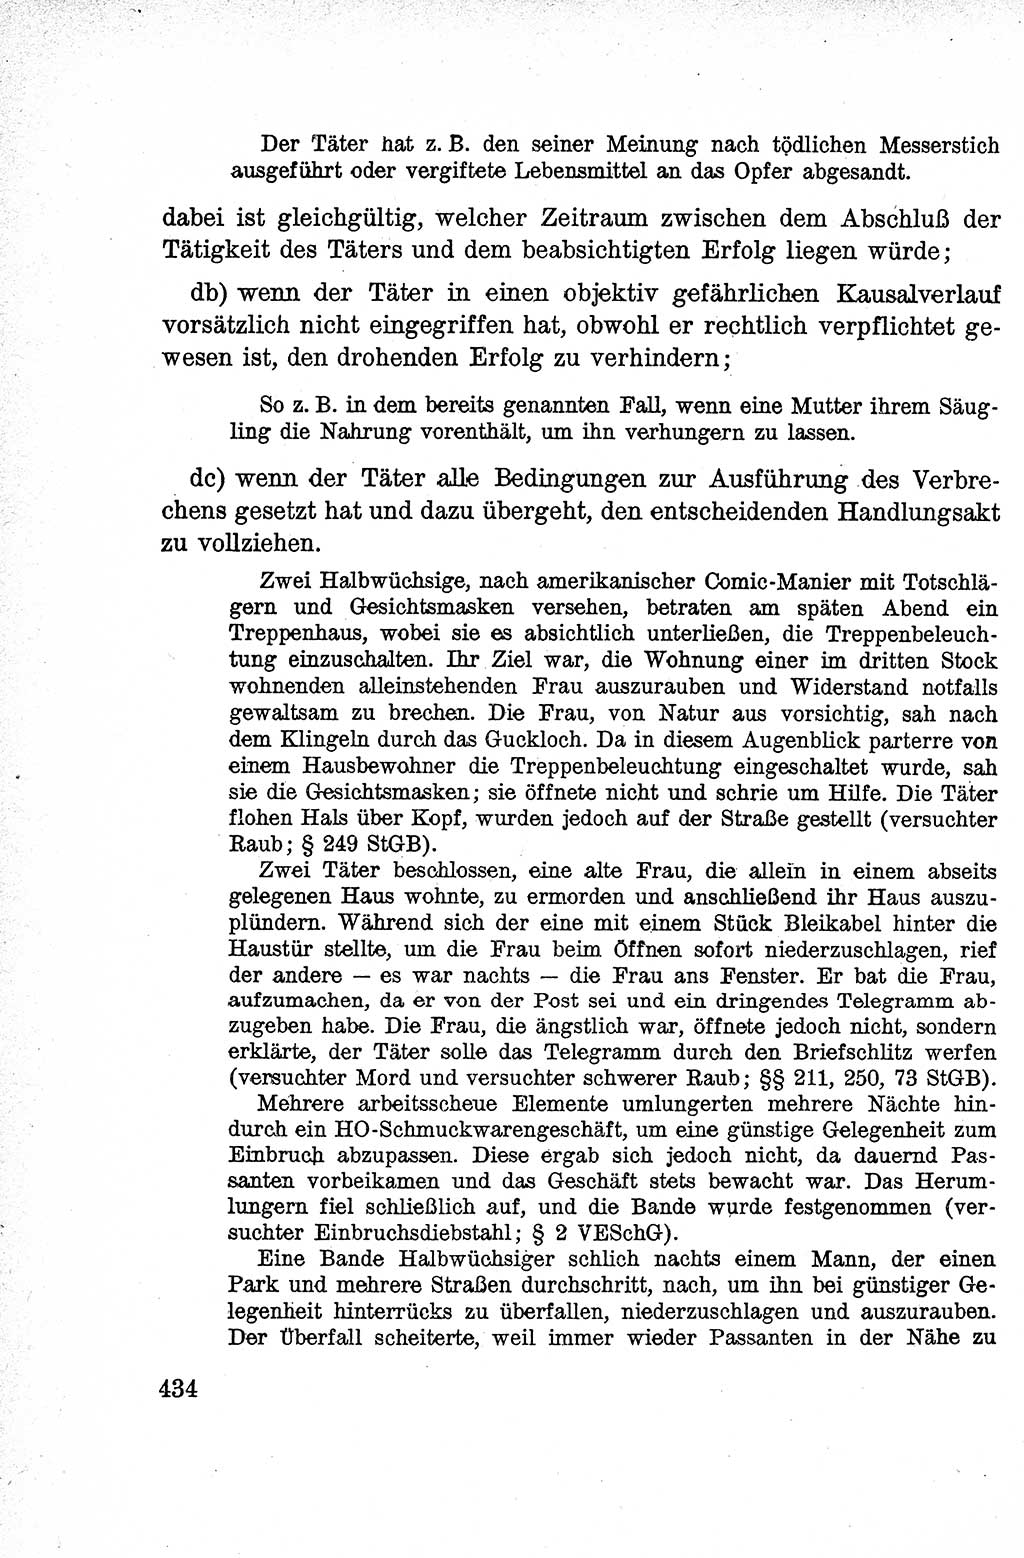 Lehrbuch des Strafrechts der Deutschen Demokratischen Republik (DDR), Allgemeiner Teil 1959, Seite 434 (Lb. Strafr. DDR AT 1959, S. 434)